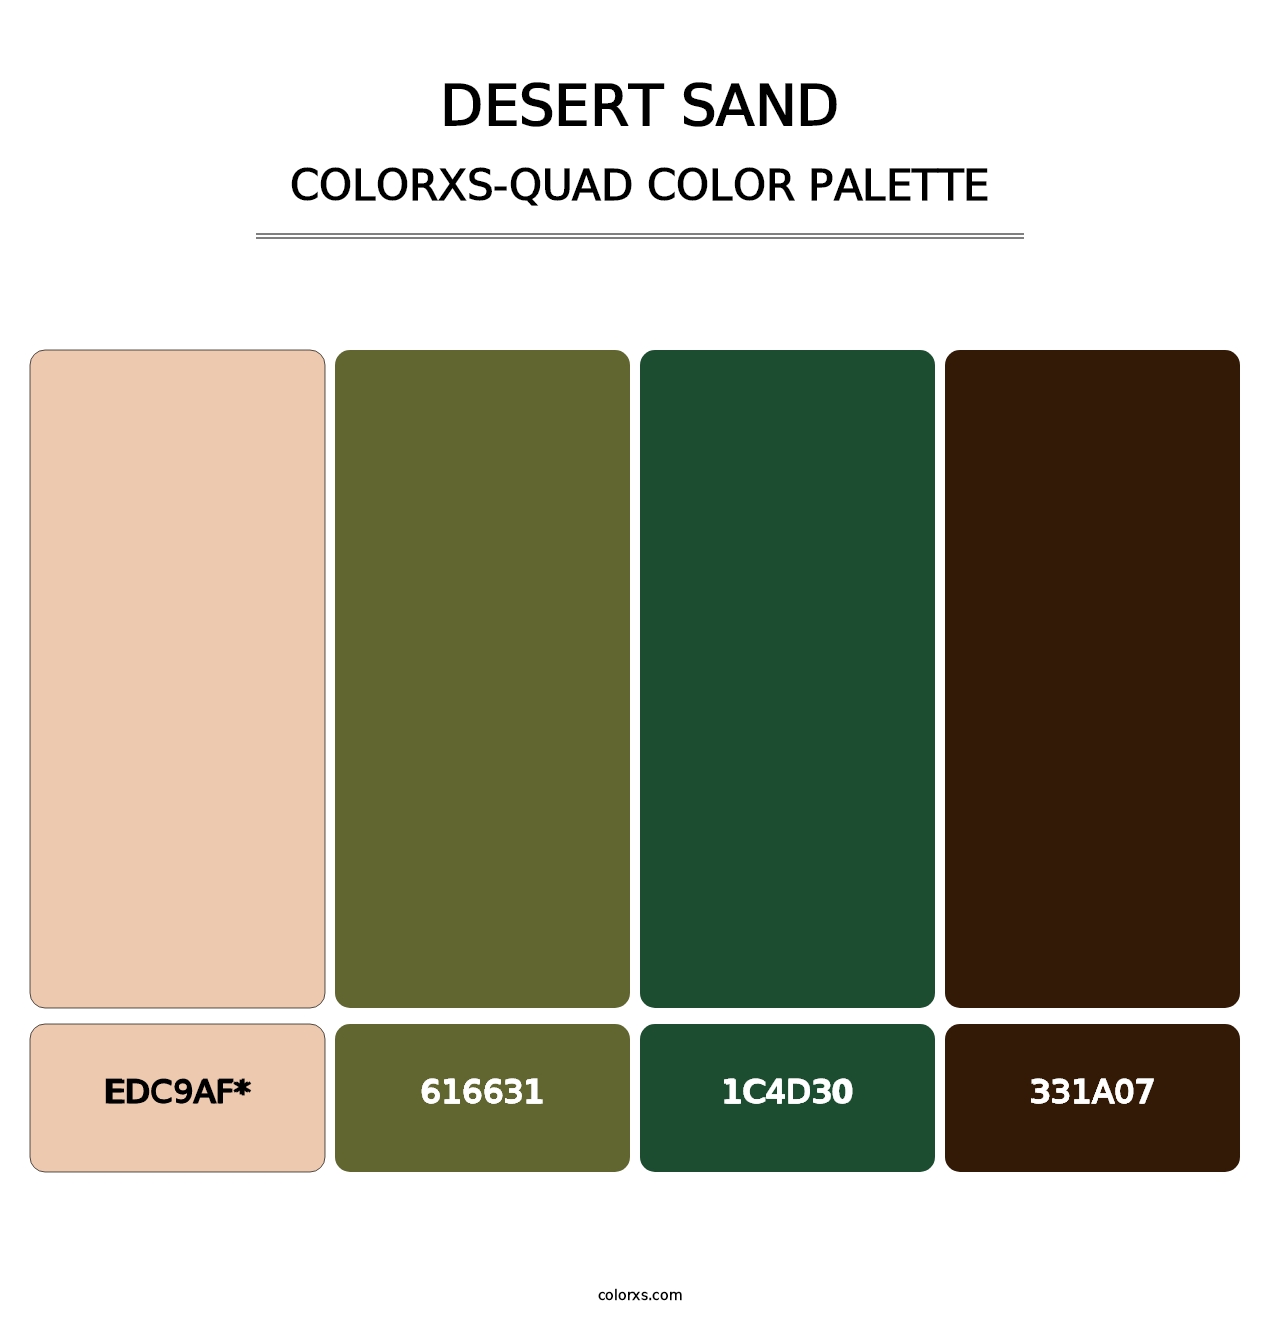 Desert Sand - Colorxs Quad Palette